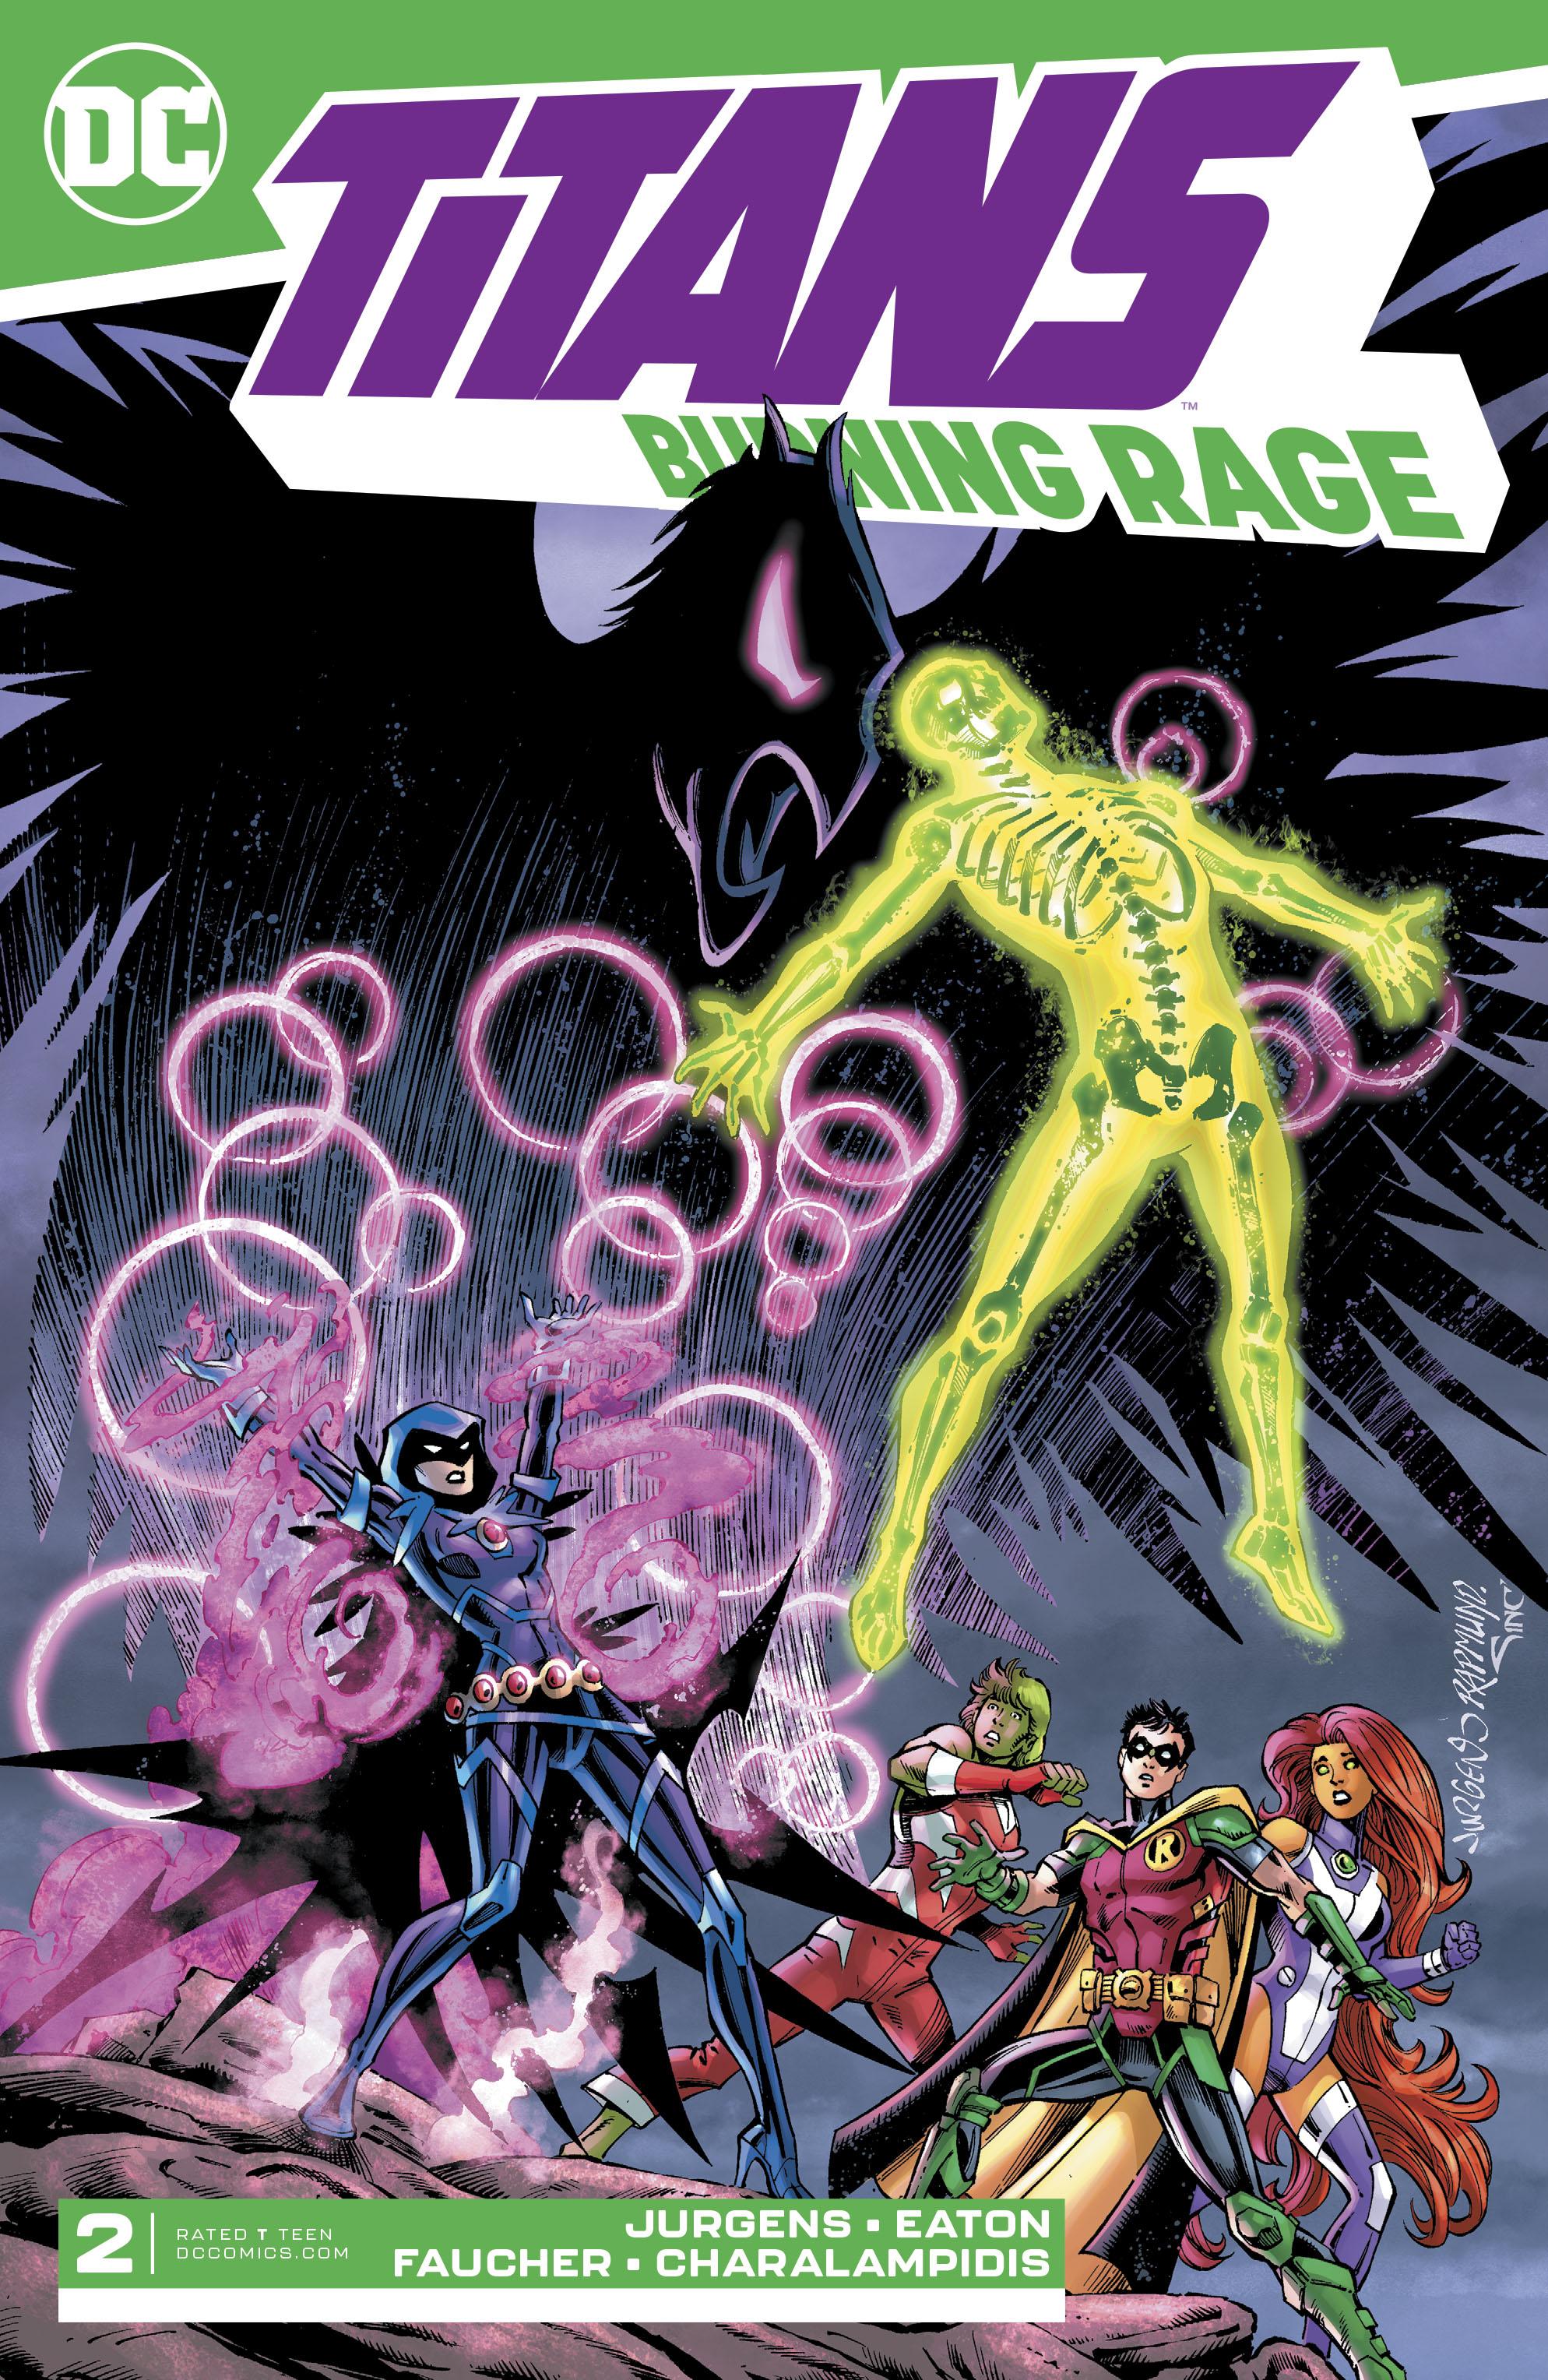 Titans: Burning Rage Vol. 1 #2